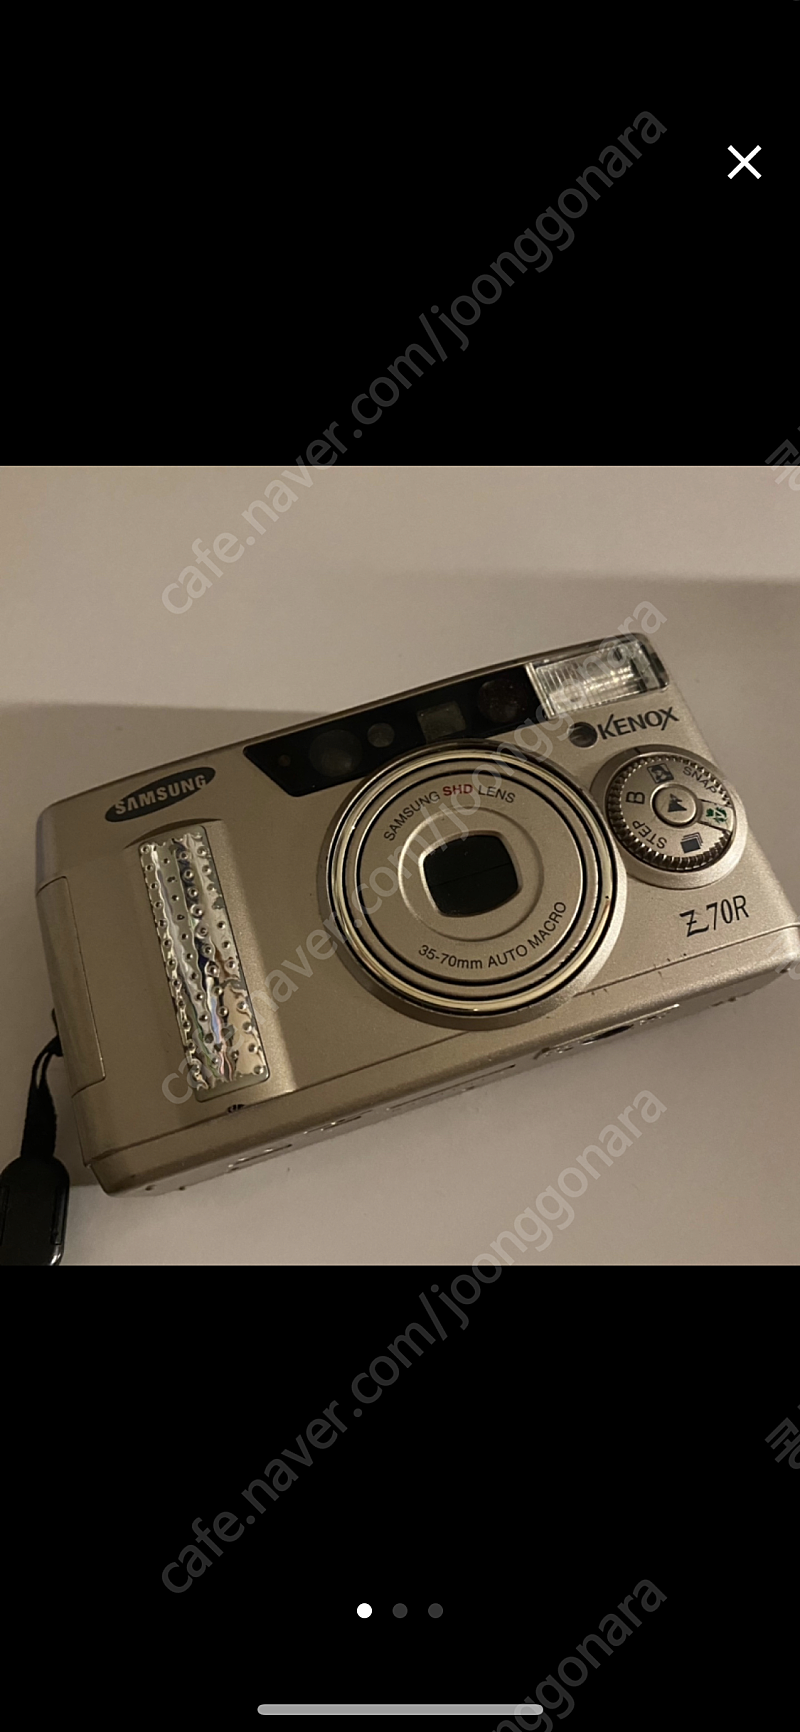 삼성 필름 카메라